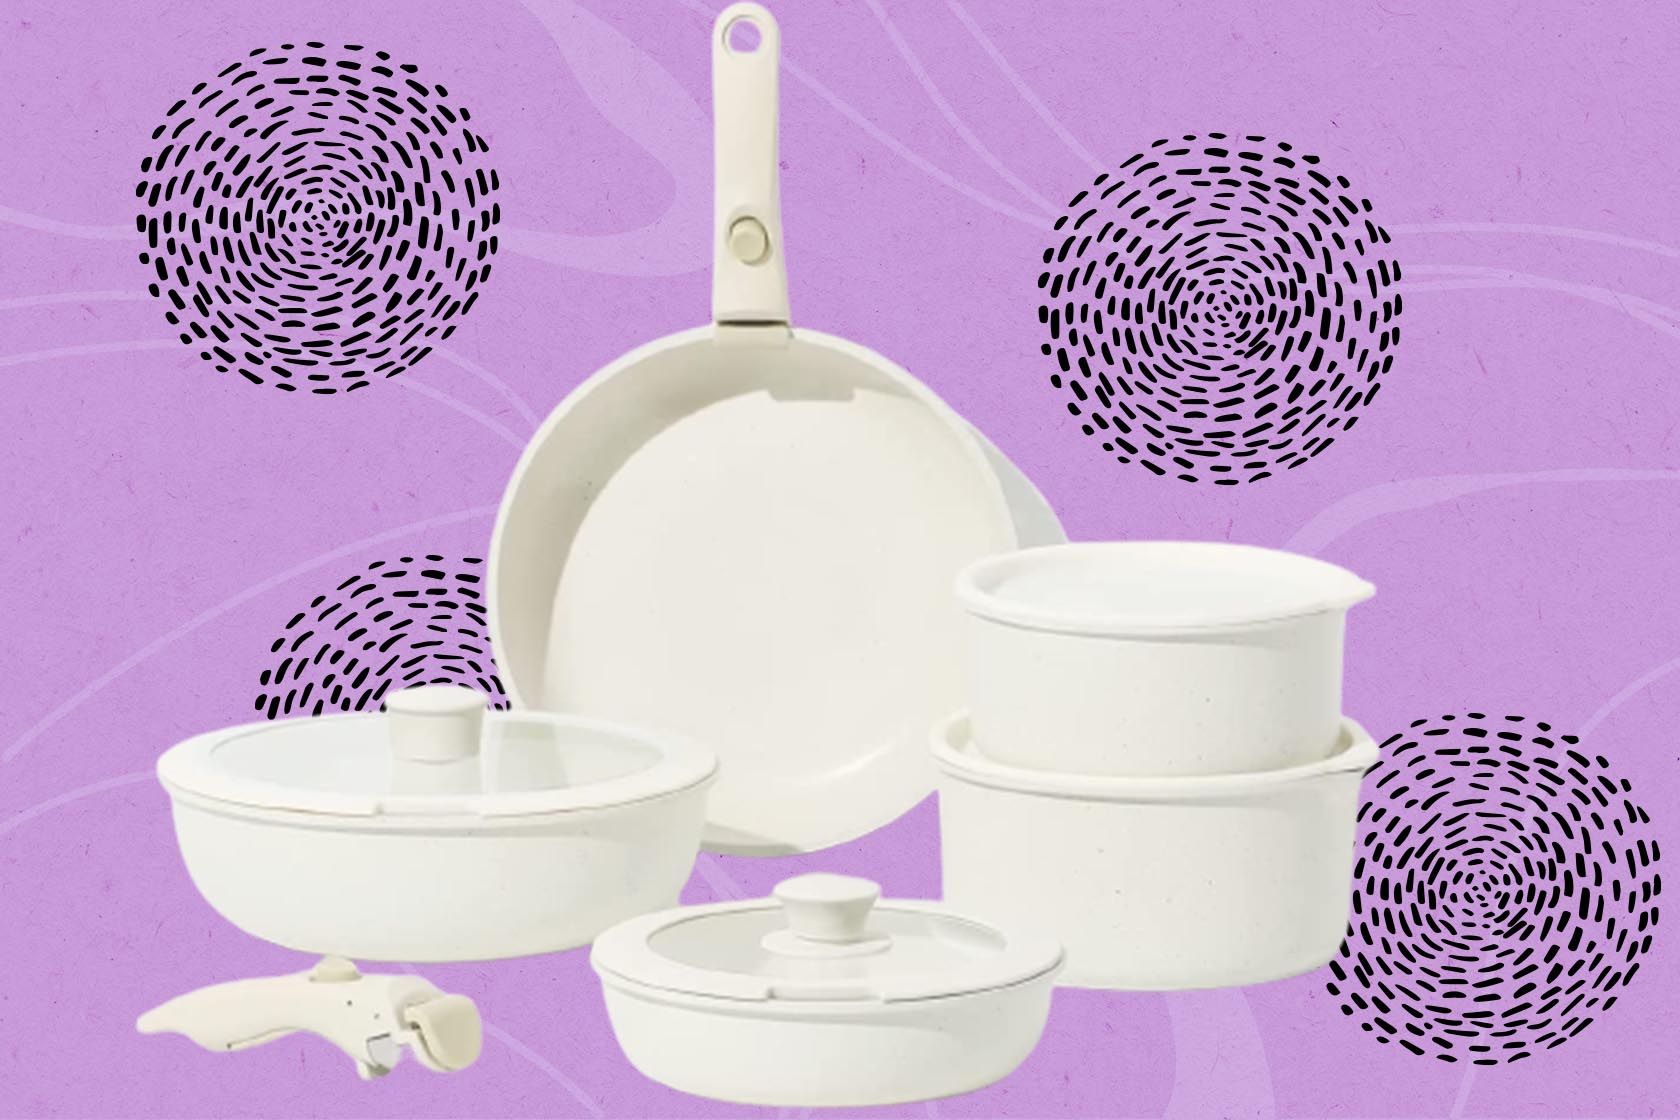 CAROTE 11pcs Pots and Pans Set, Nonstick Cookware Set Detachable Handl